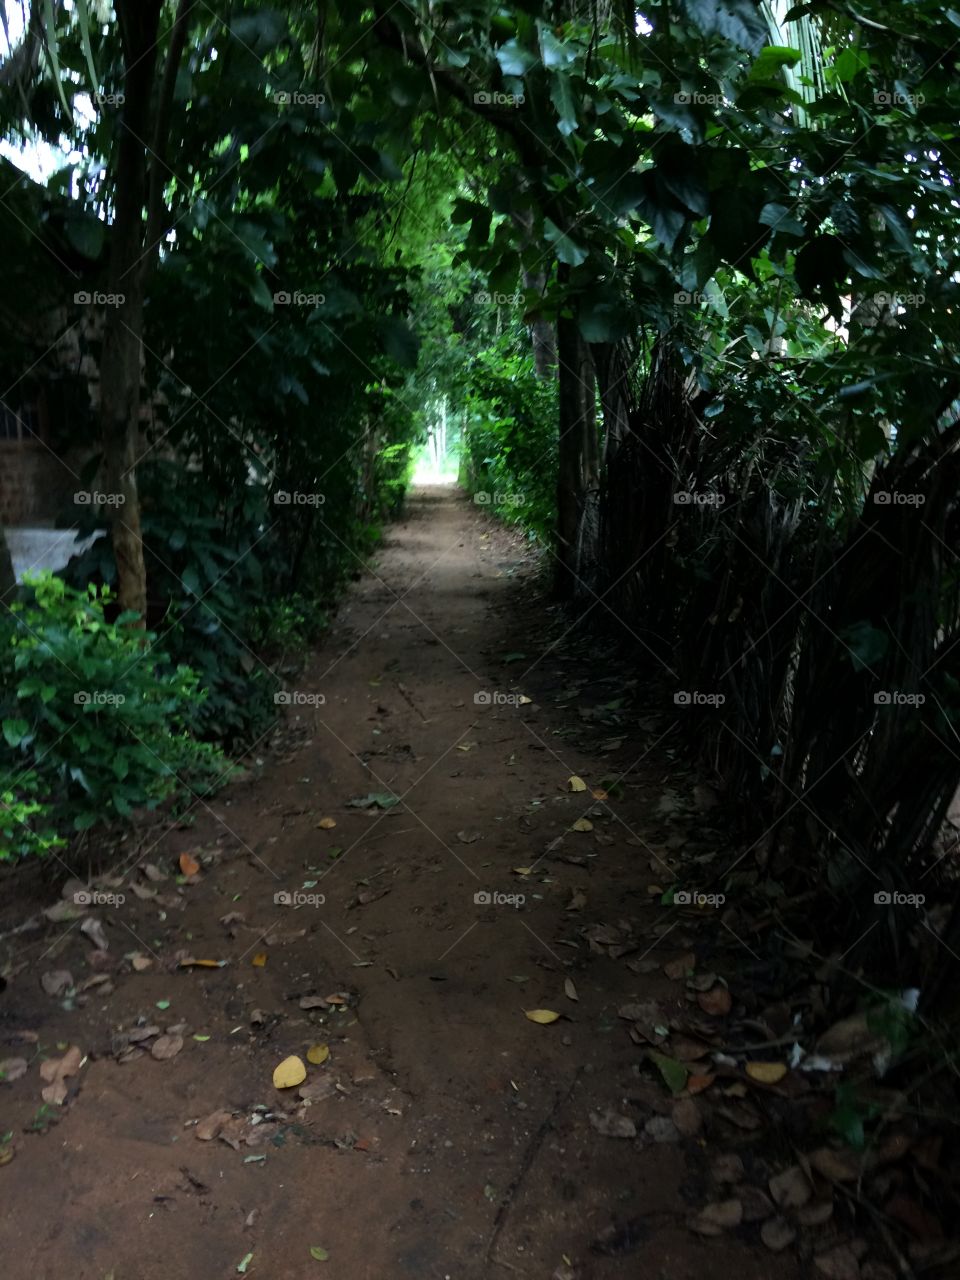 Beautiful path